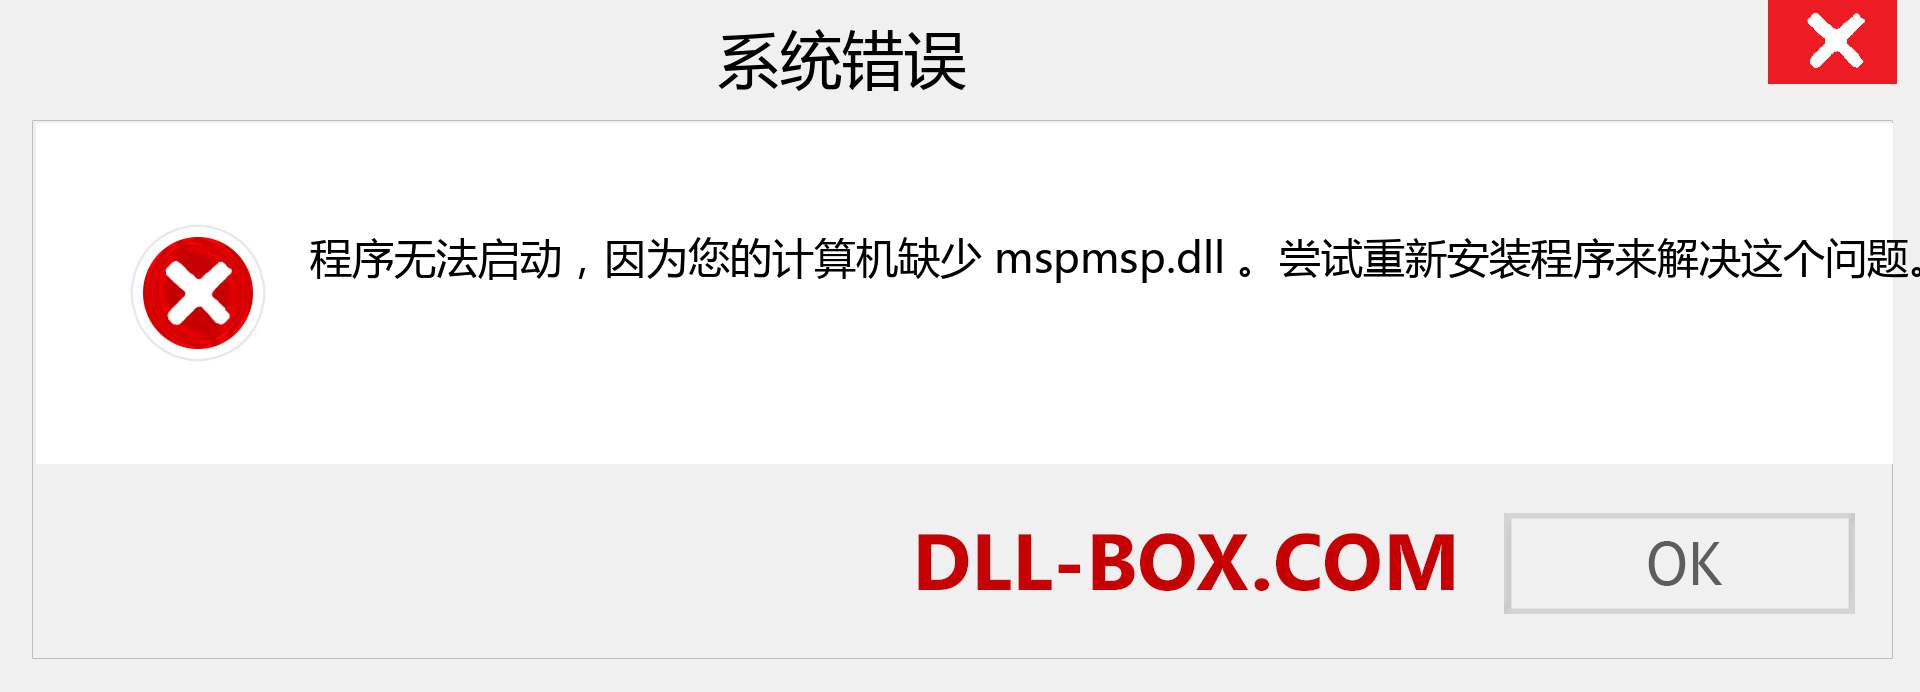 mspmsp.dll 文件丢失？。 适用于 Windows 7、8、10 的下载 - 修复 Windows、照片、图像上的 mspmsp dll 丢失错误